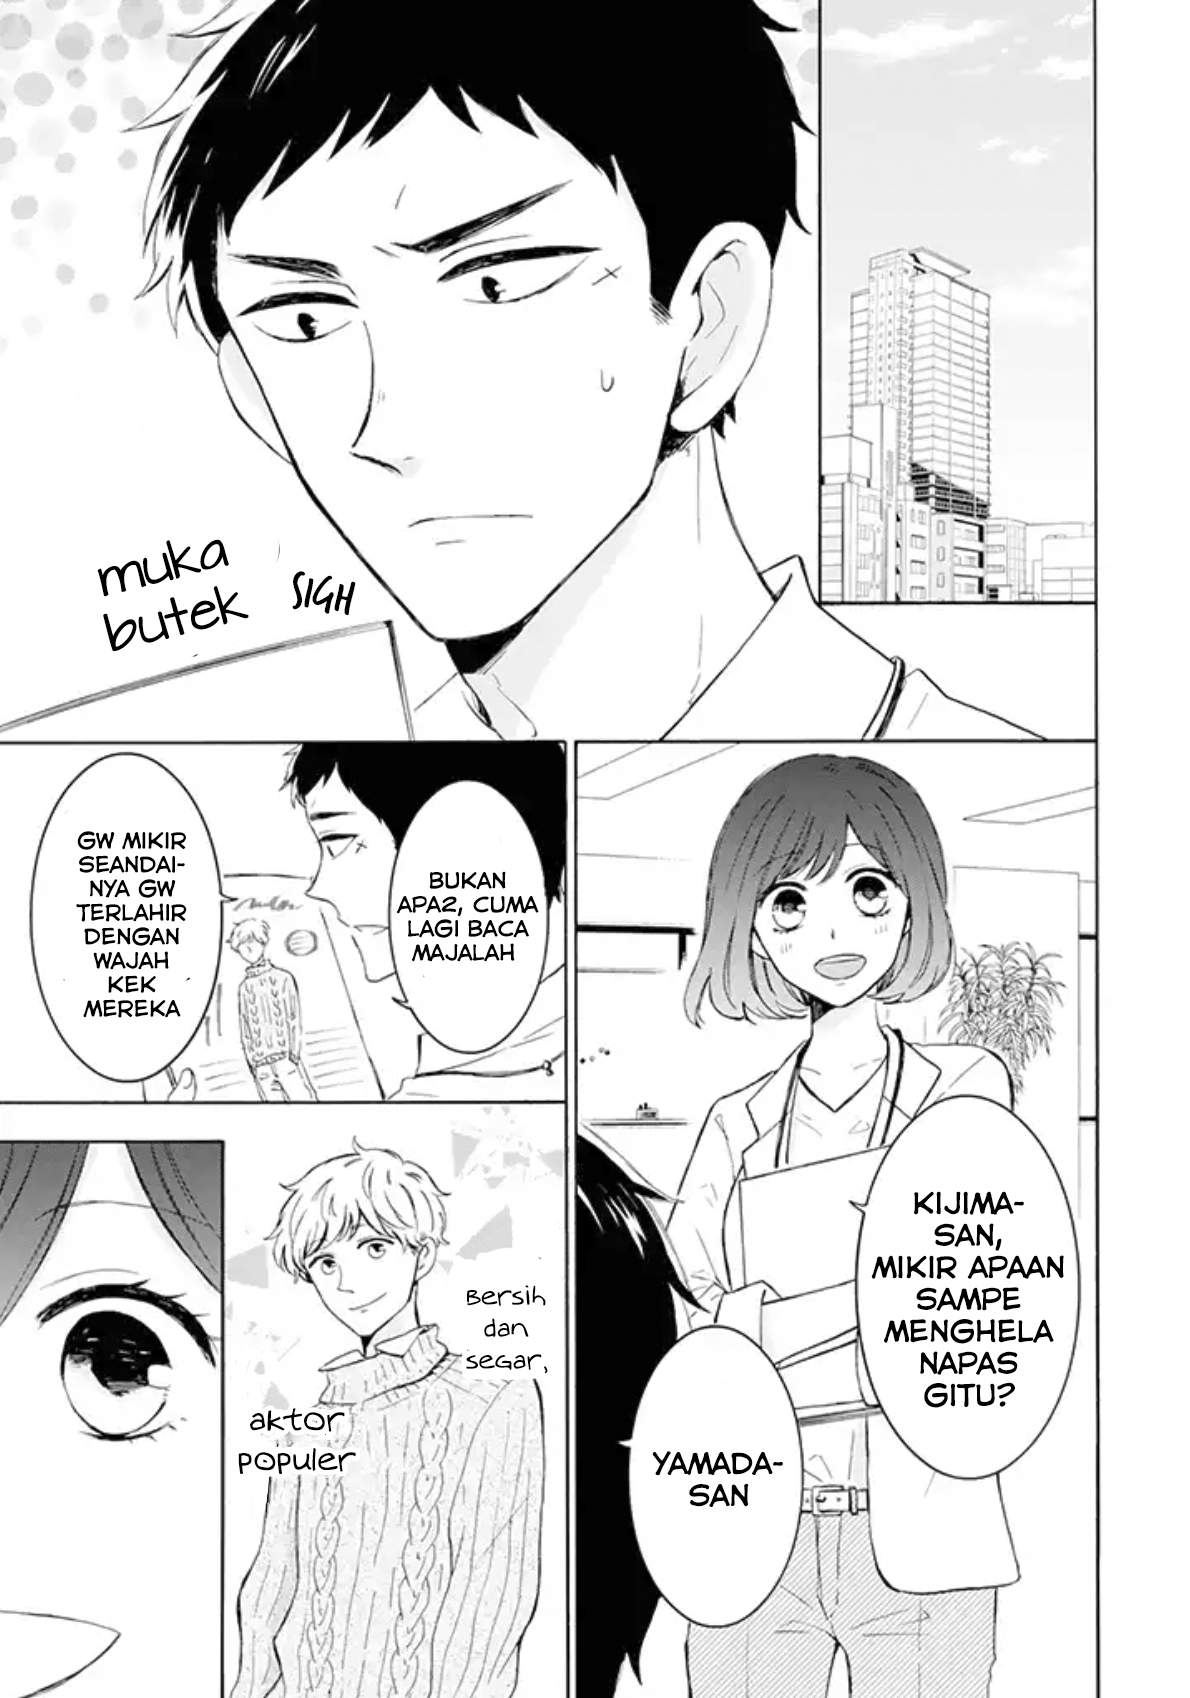 Kijima-san to Yamada-san Chapter 1